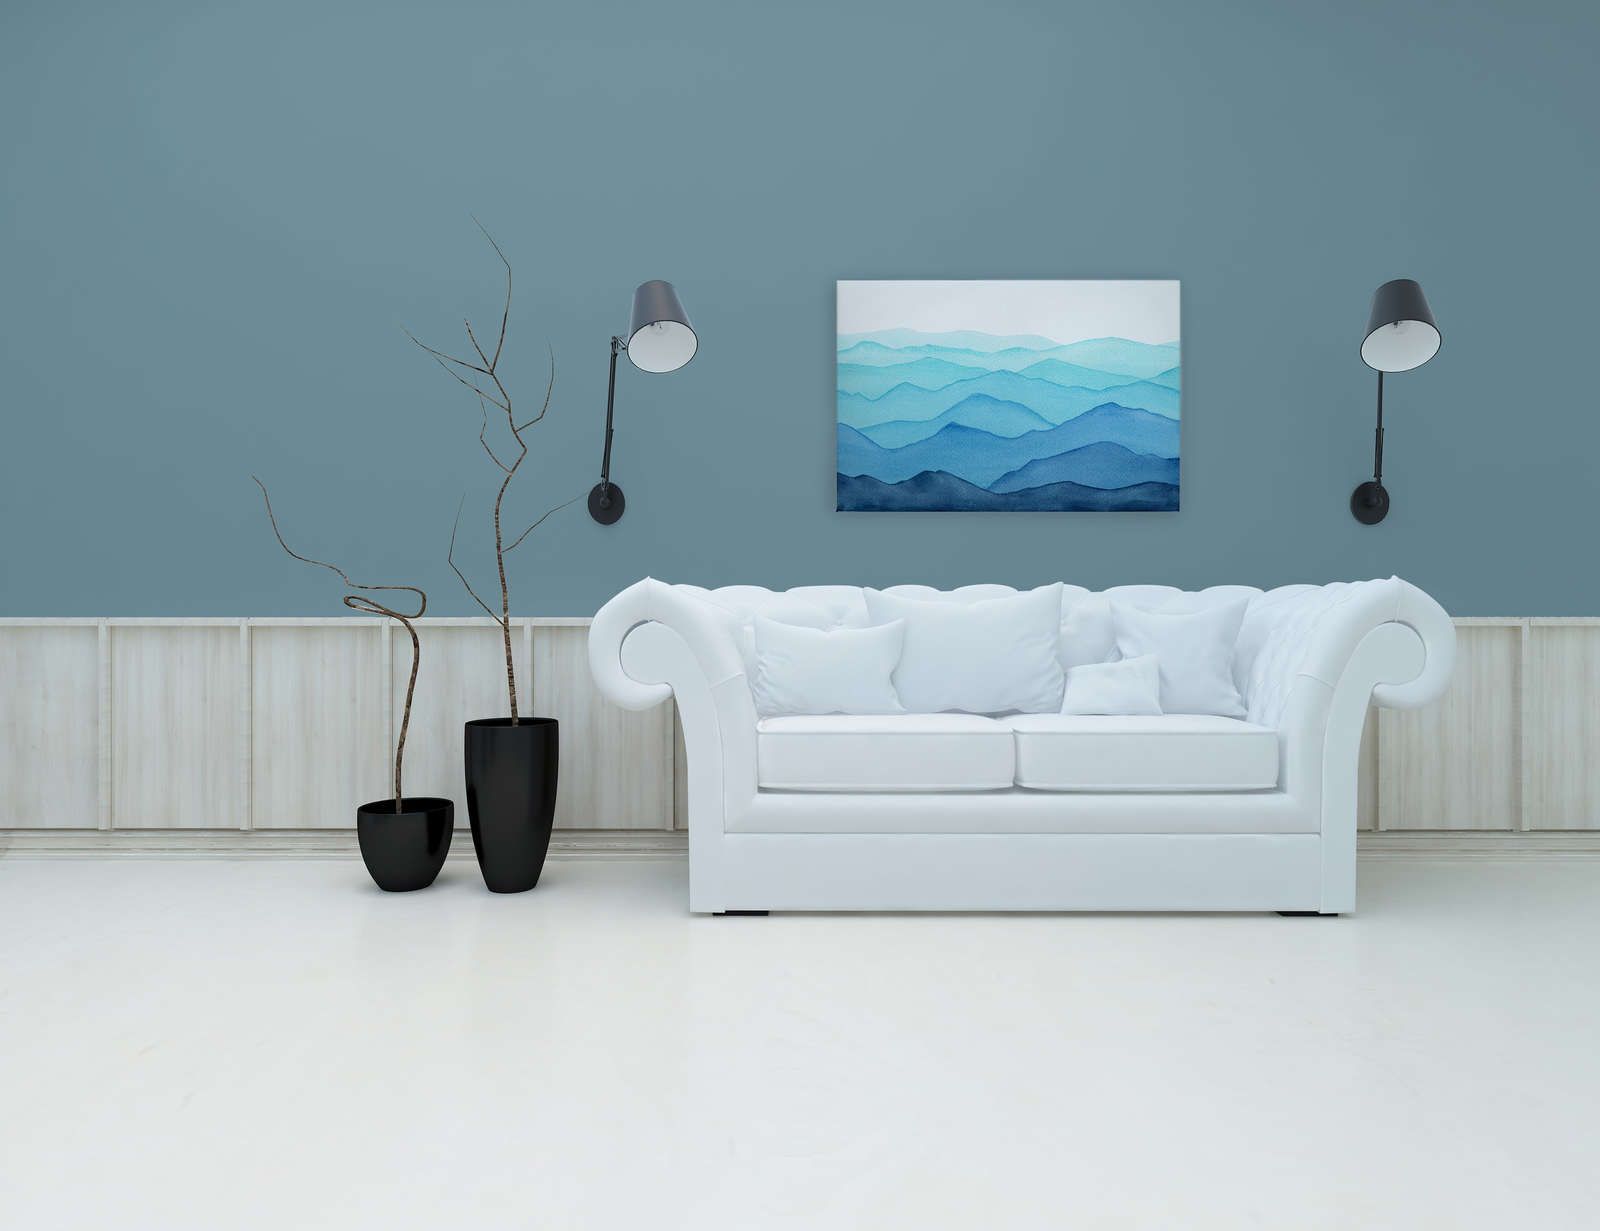             Canvas Zee met golven in aquarel - 90 cm x 60 cm
        